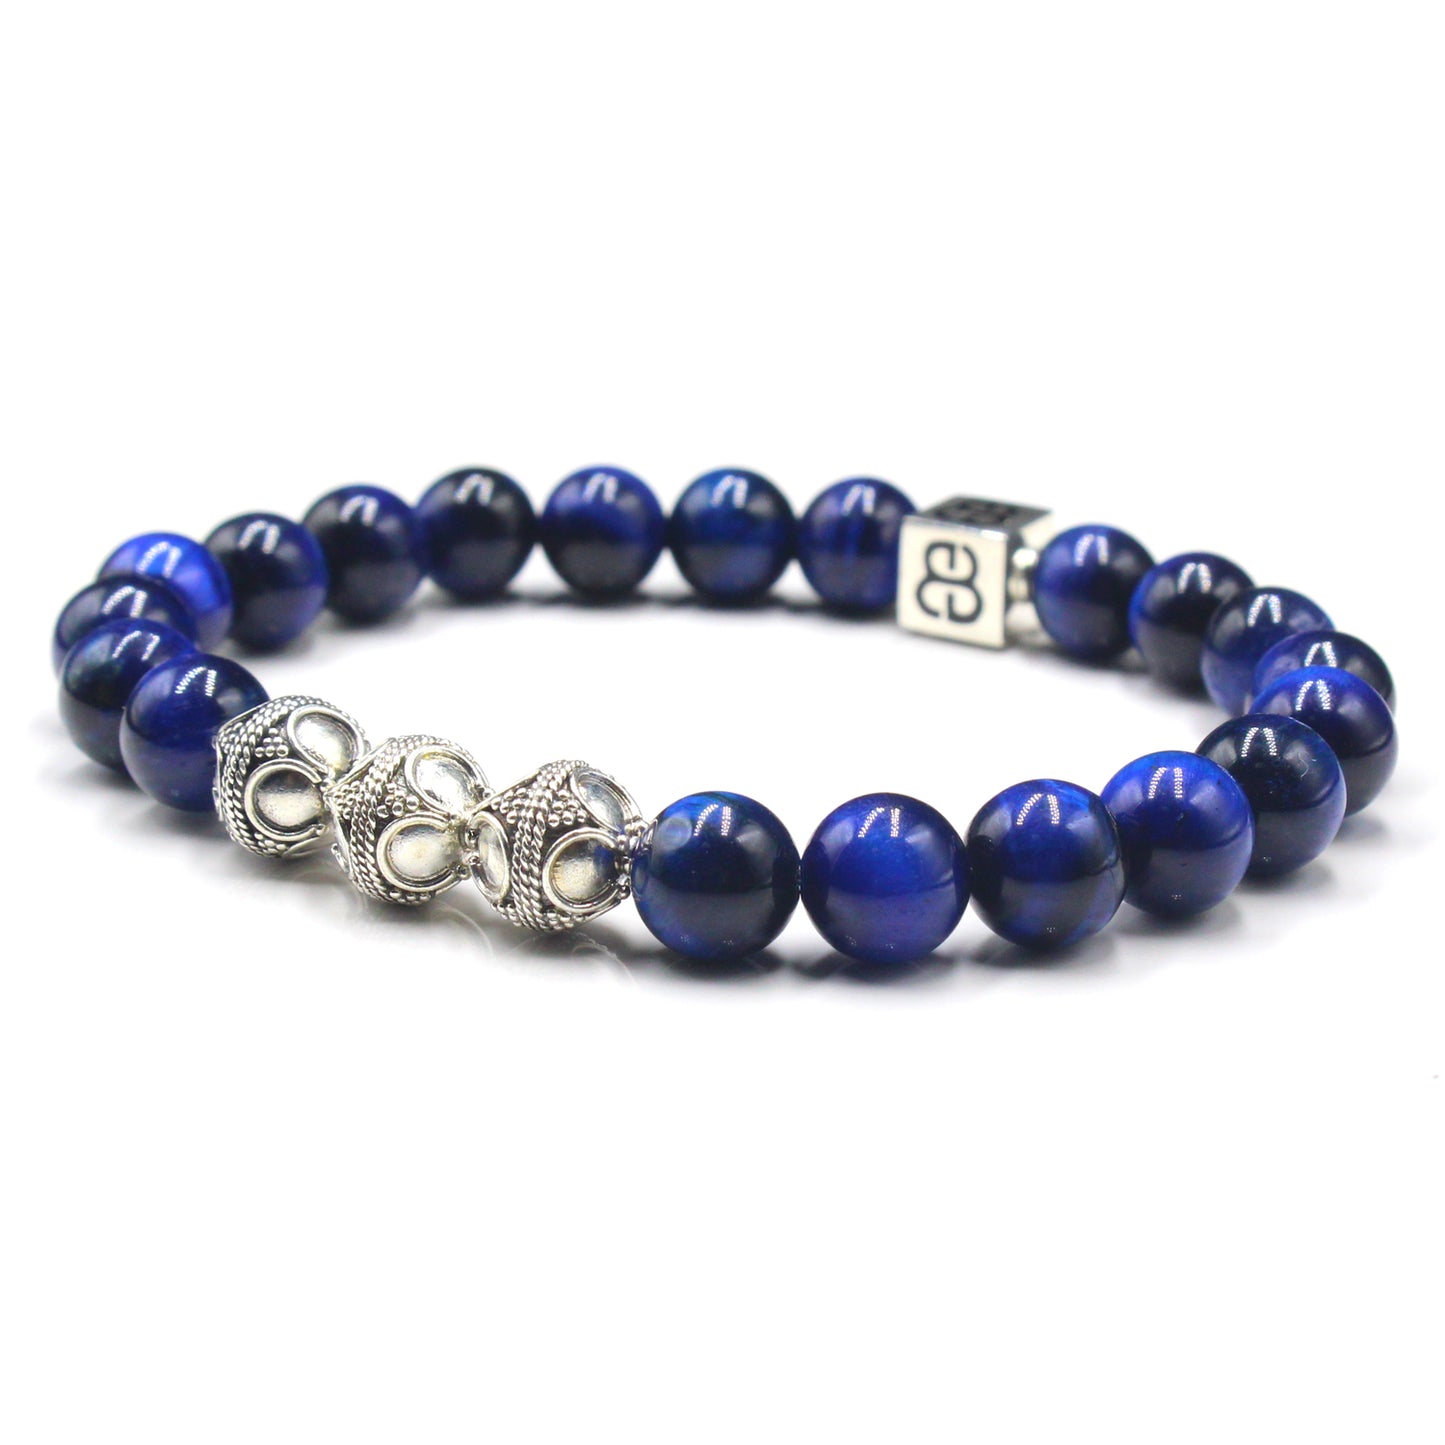 Blue Tiger's Eye Bracelet, Blue Tiger's Eye and Sterling Silver Bali Beads Bracelet, Men's Designer Bracelet